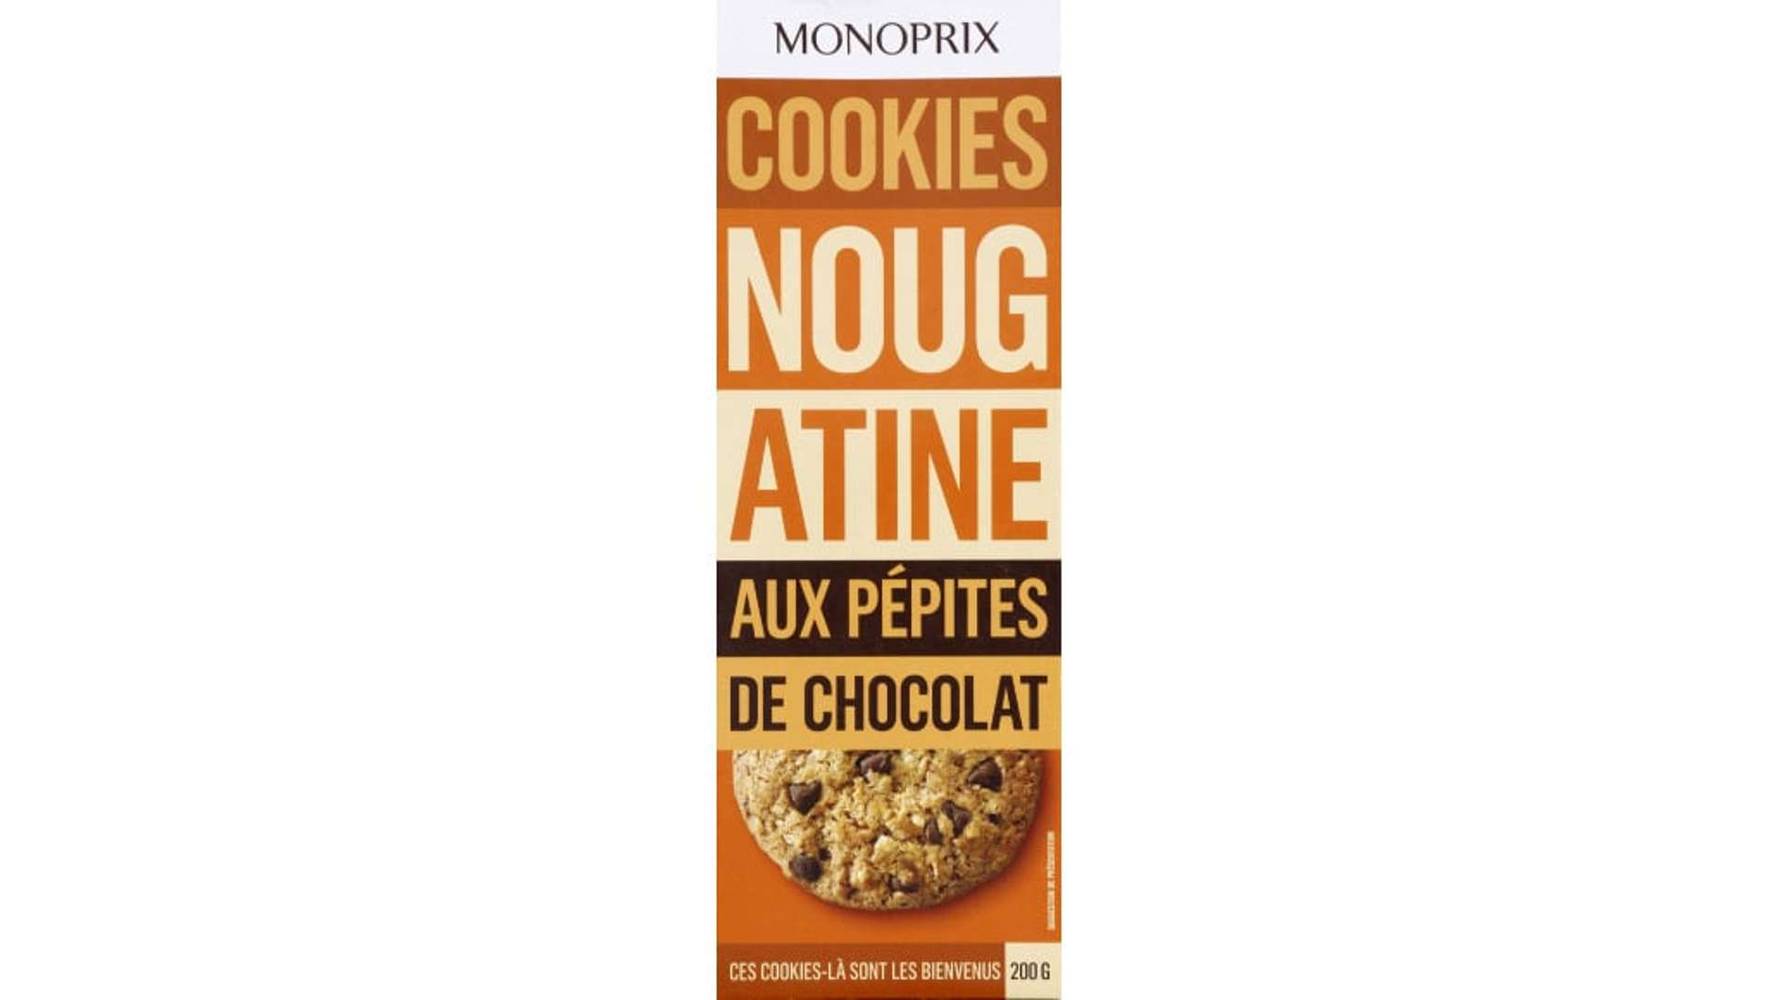 Monoprix Cookies nougatine aux pépites de chocolat Le paquet de 200 g